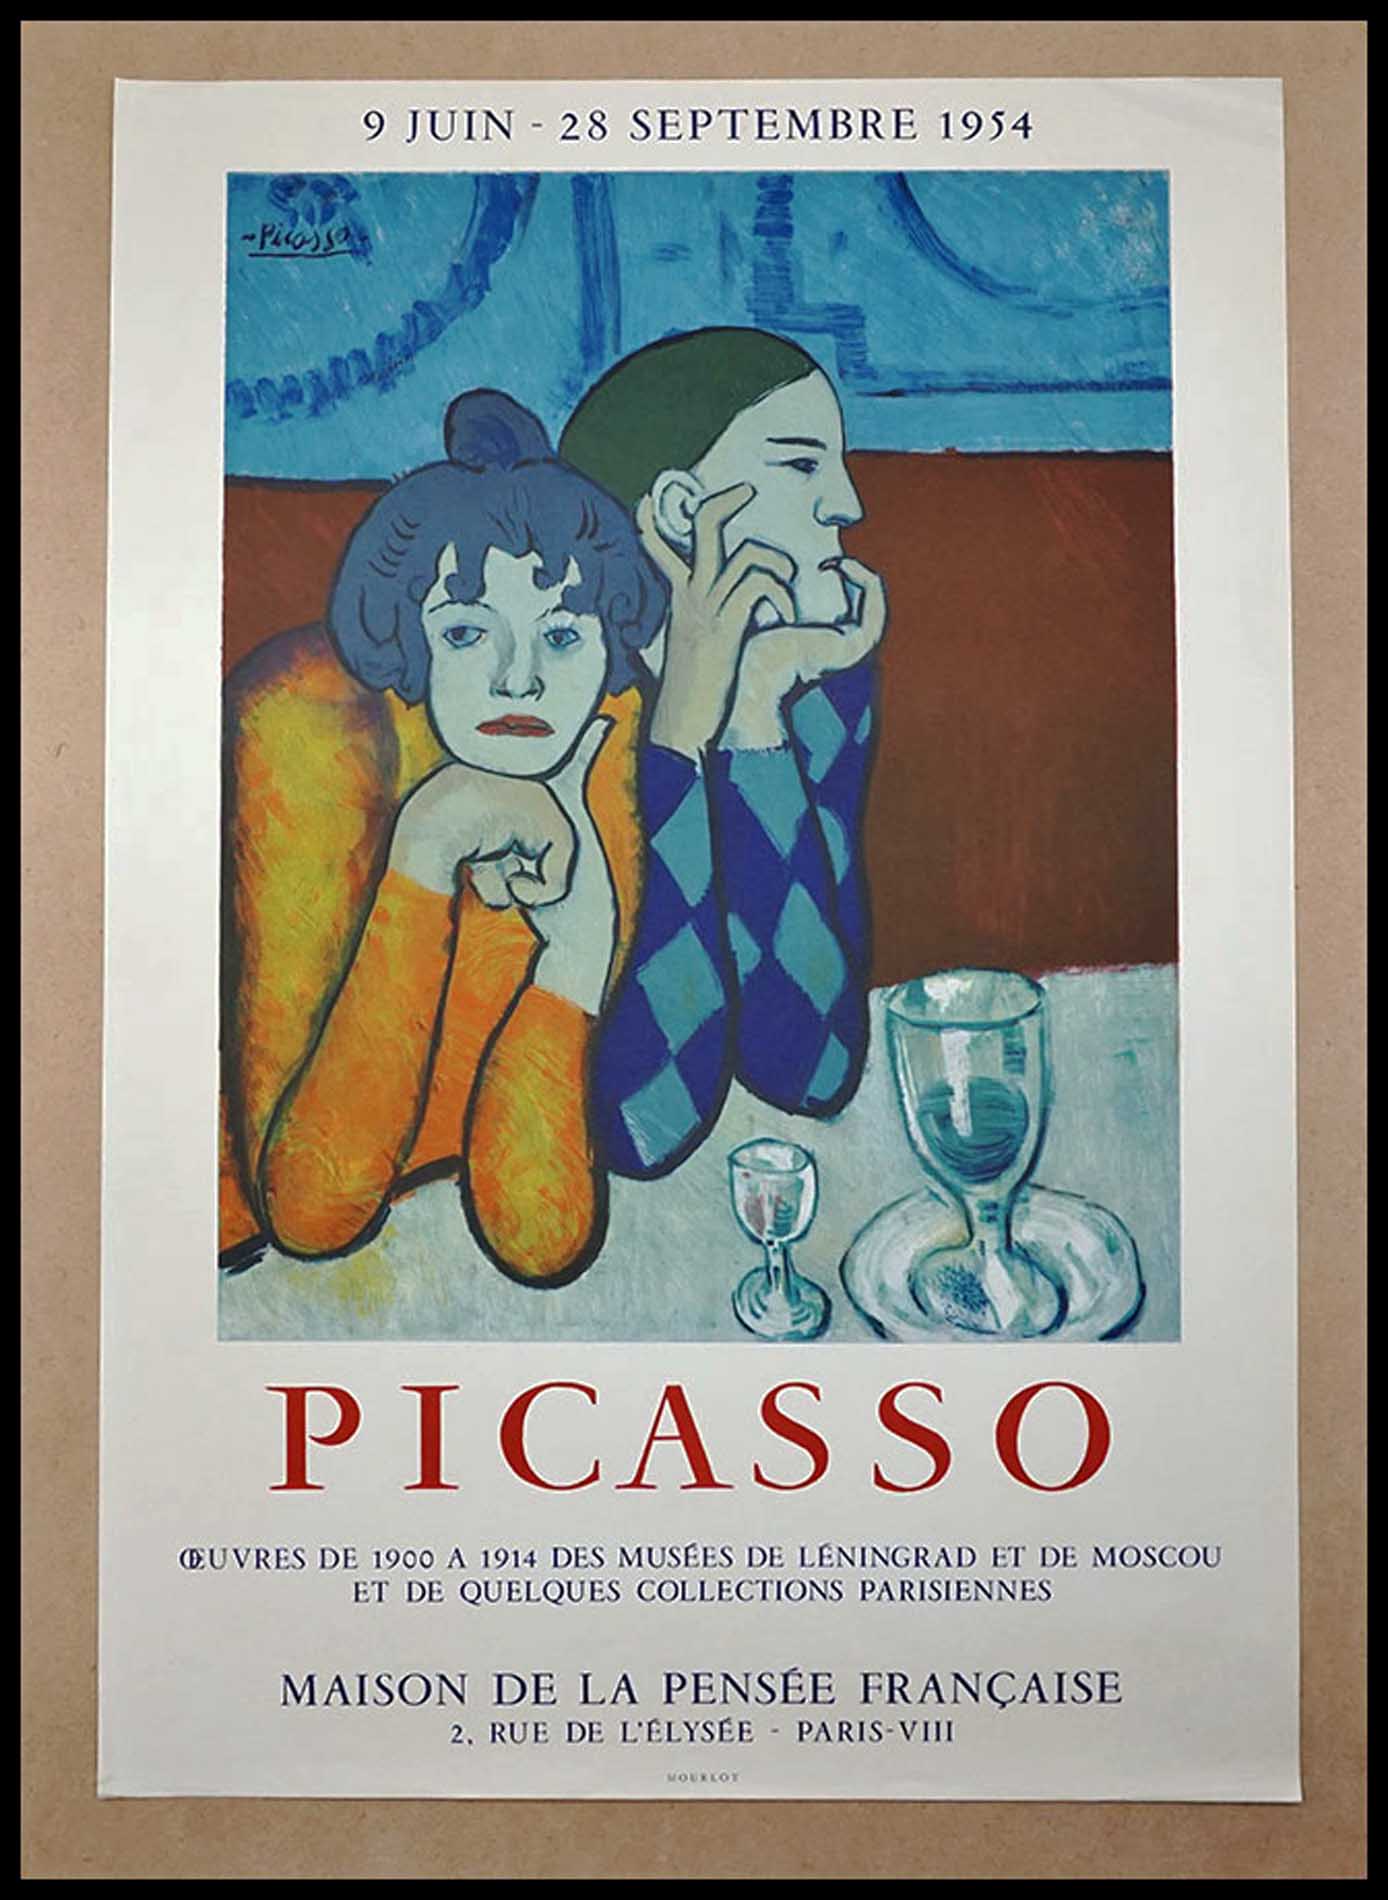 Pablo Picasso, Maison de la Pensee francaise